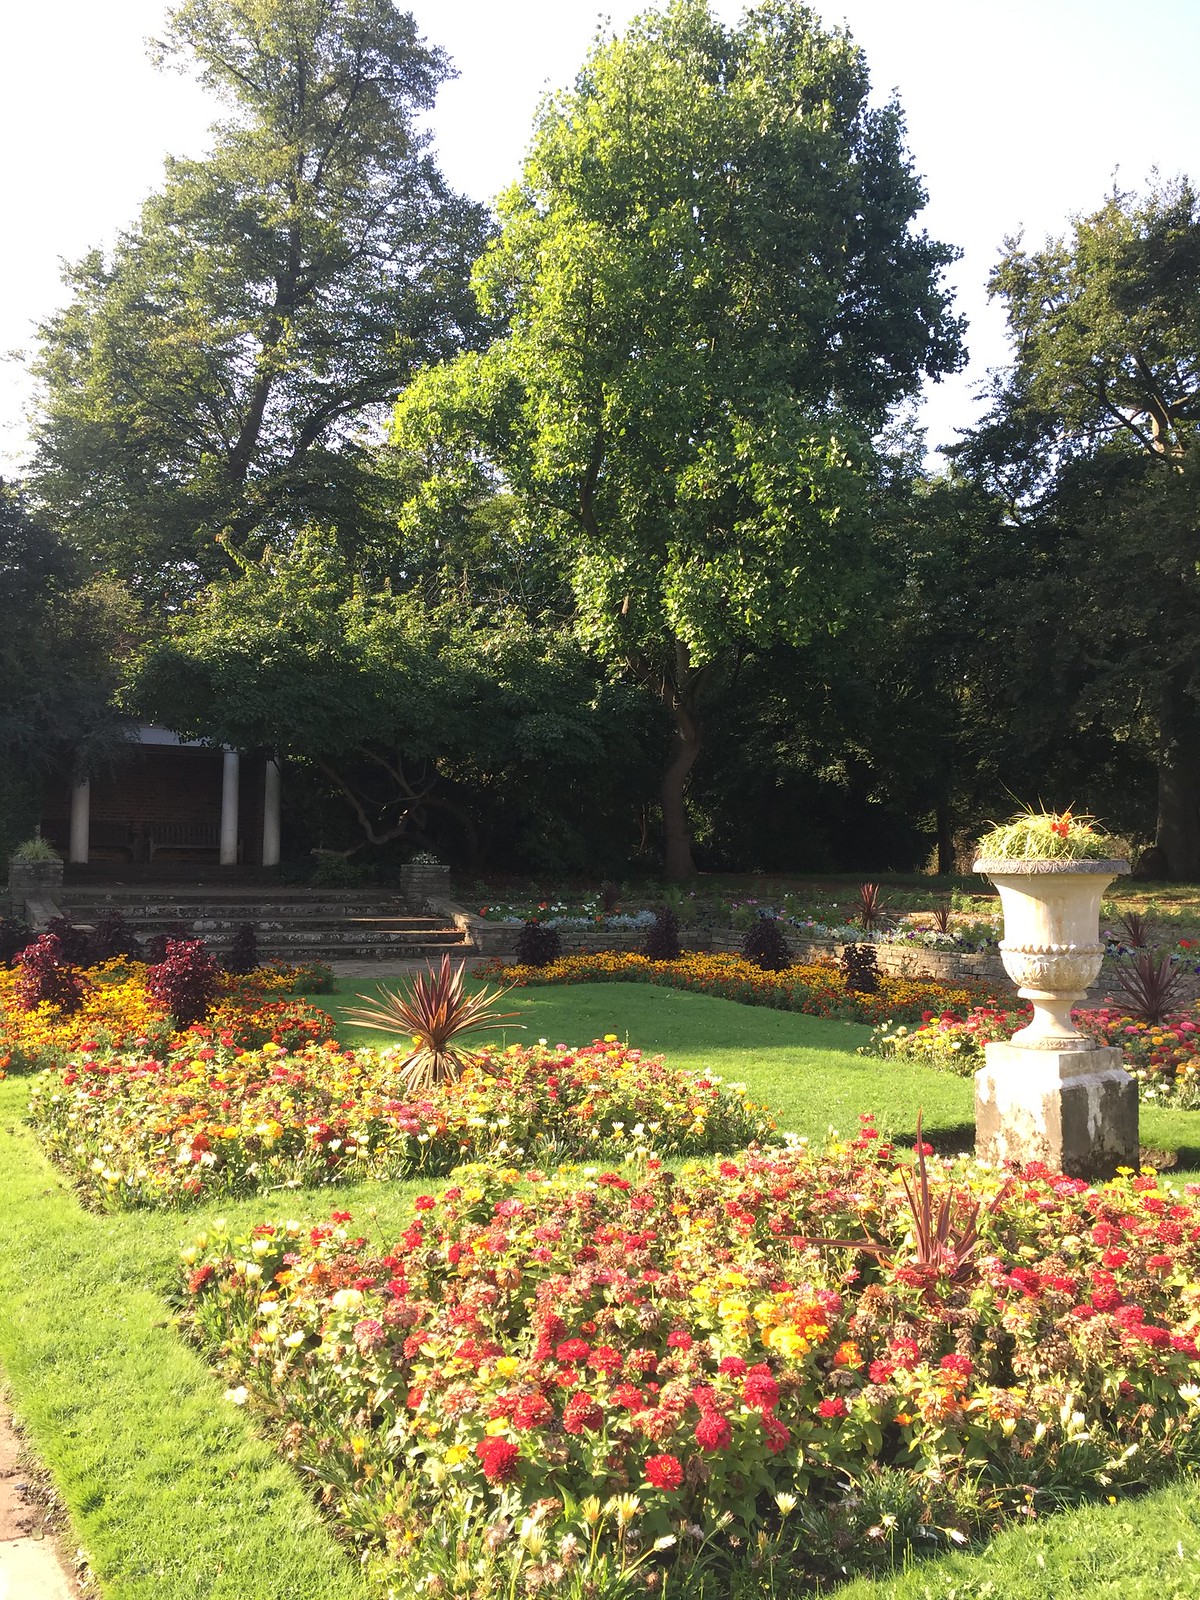  Sunken Garden and Belvedere